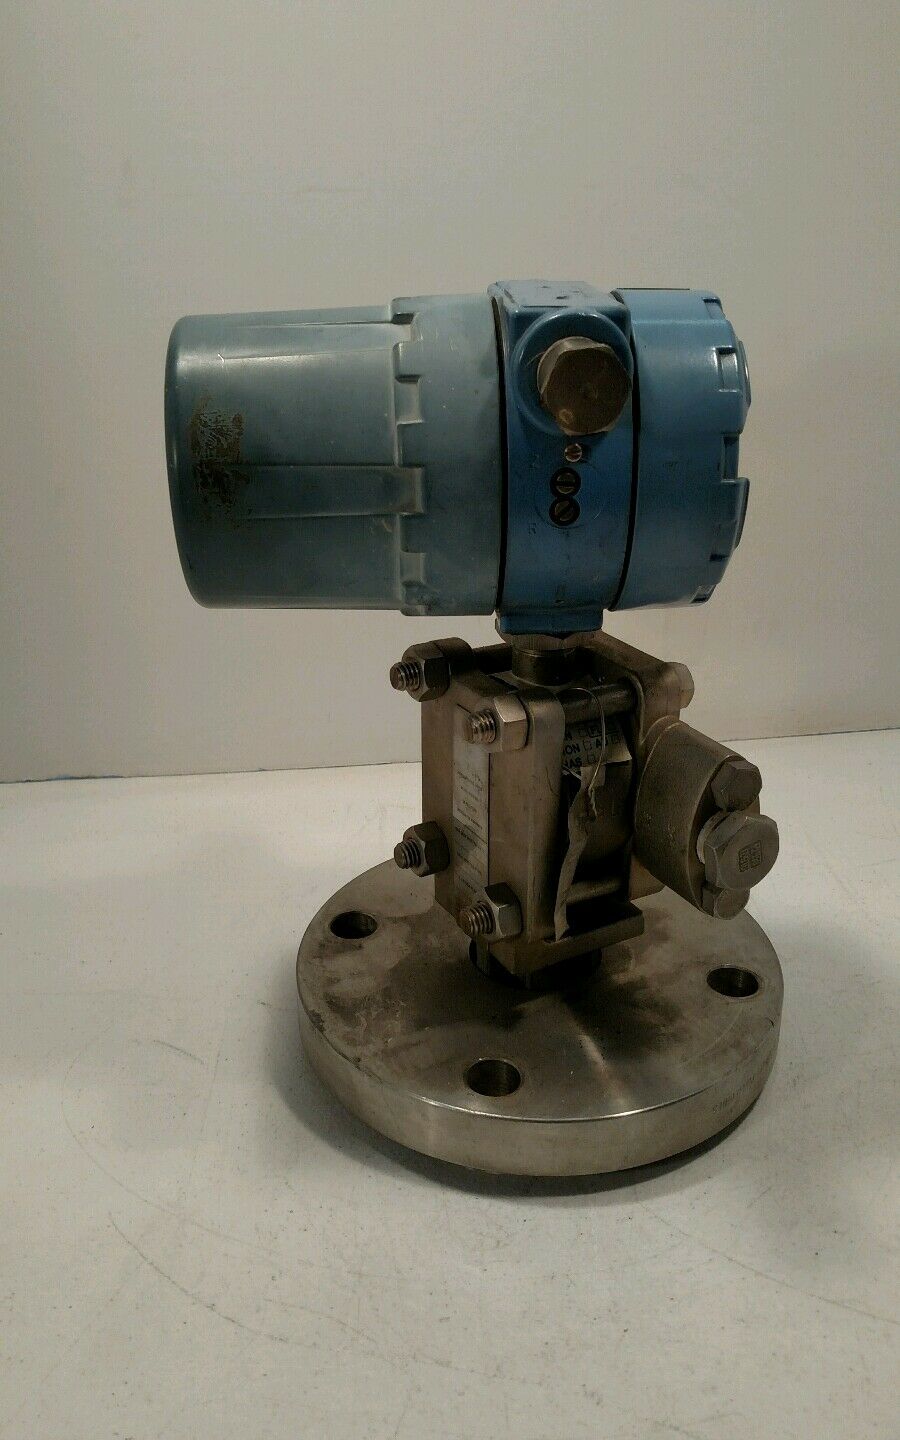 Rosemount - Model 01151-0934-0004 Pressure Transmitter